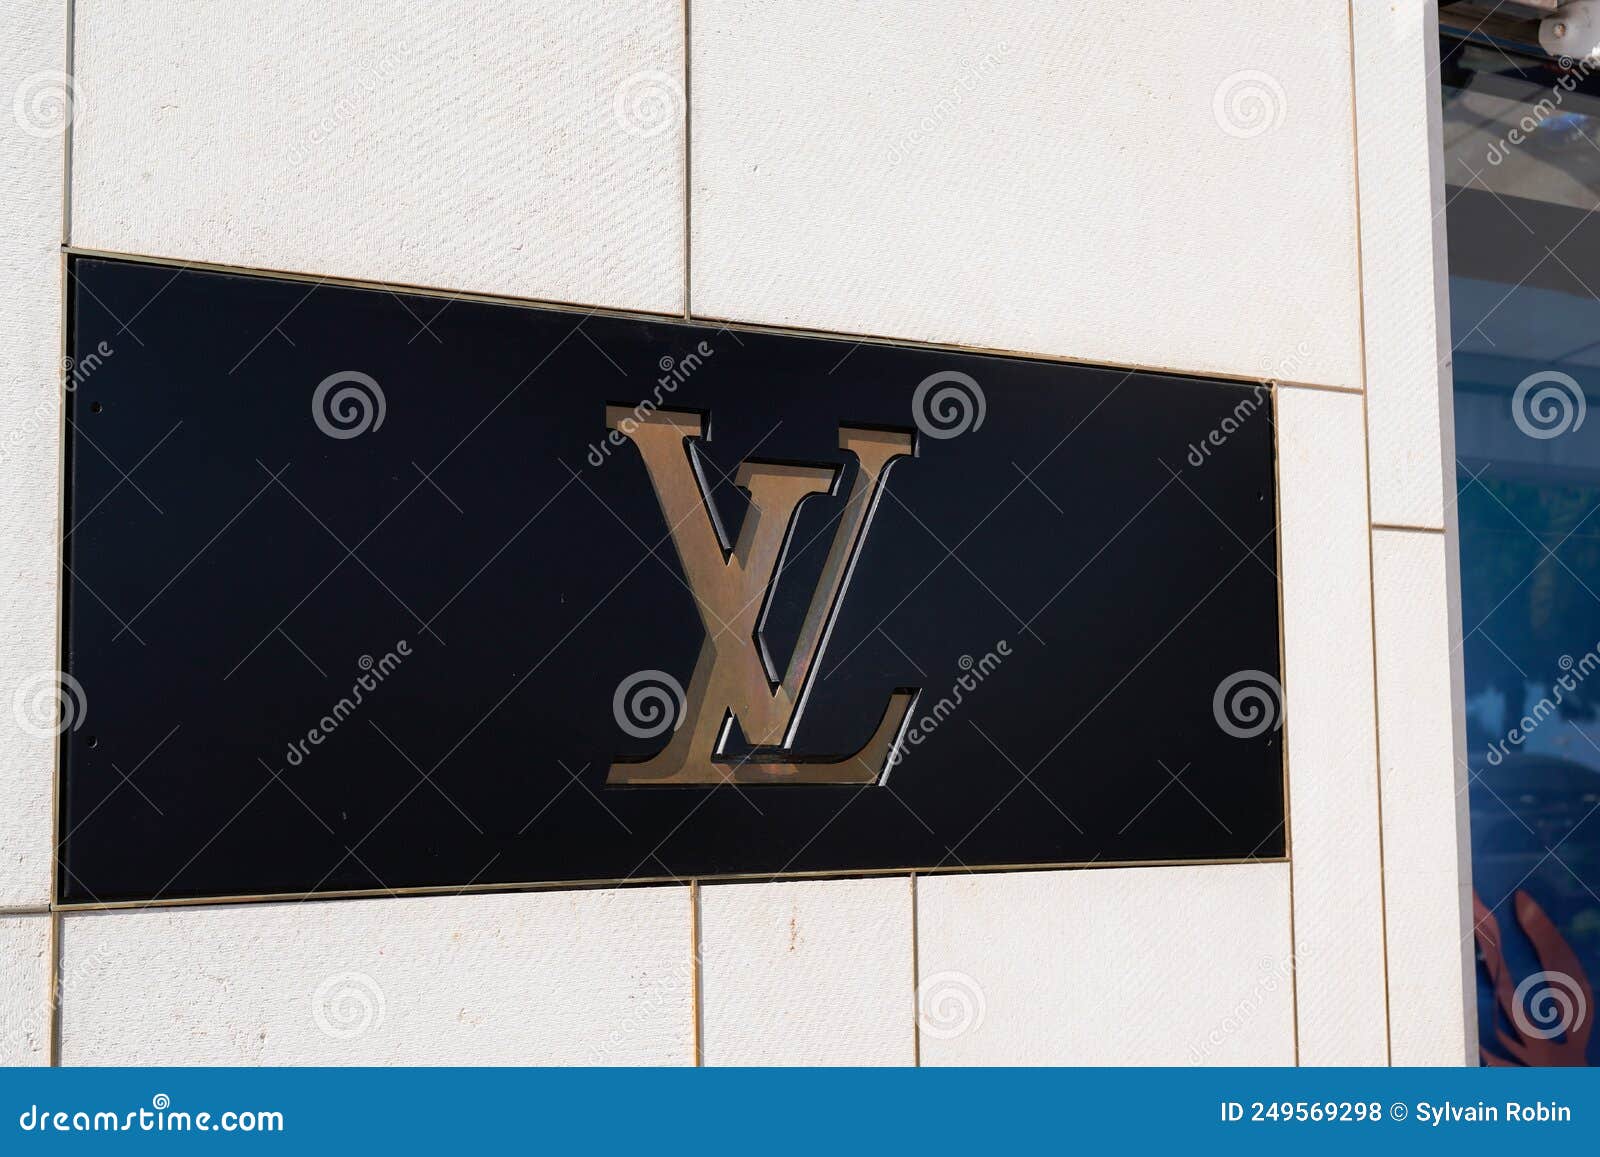 Louis Vuitton Logo and Sign Text Facade Entrance Store Fashion Brand ...